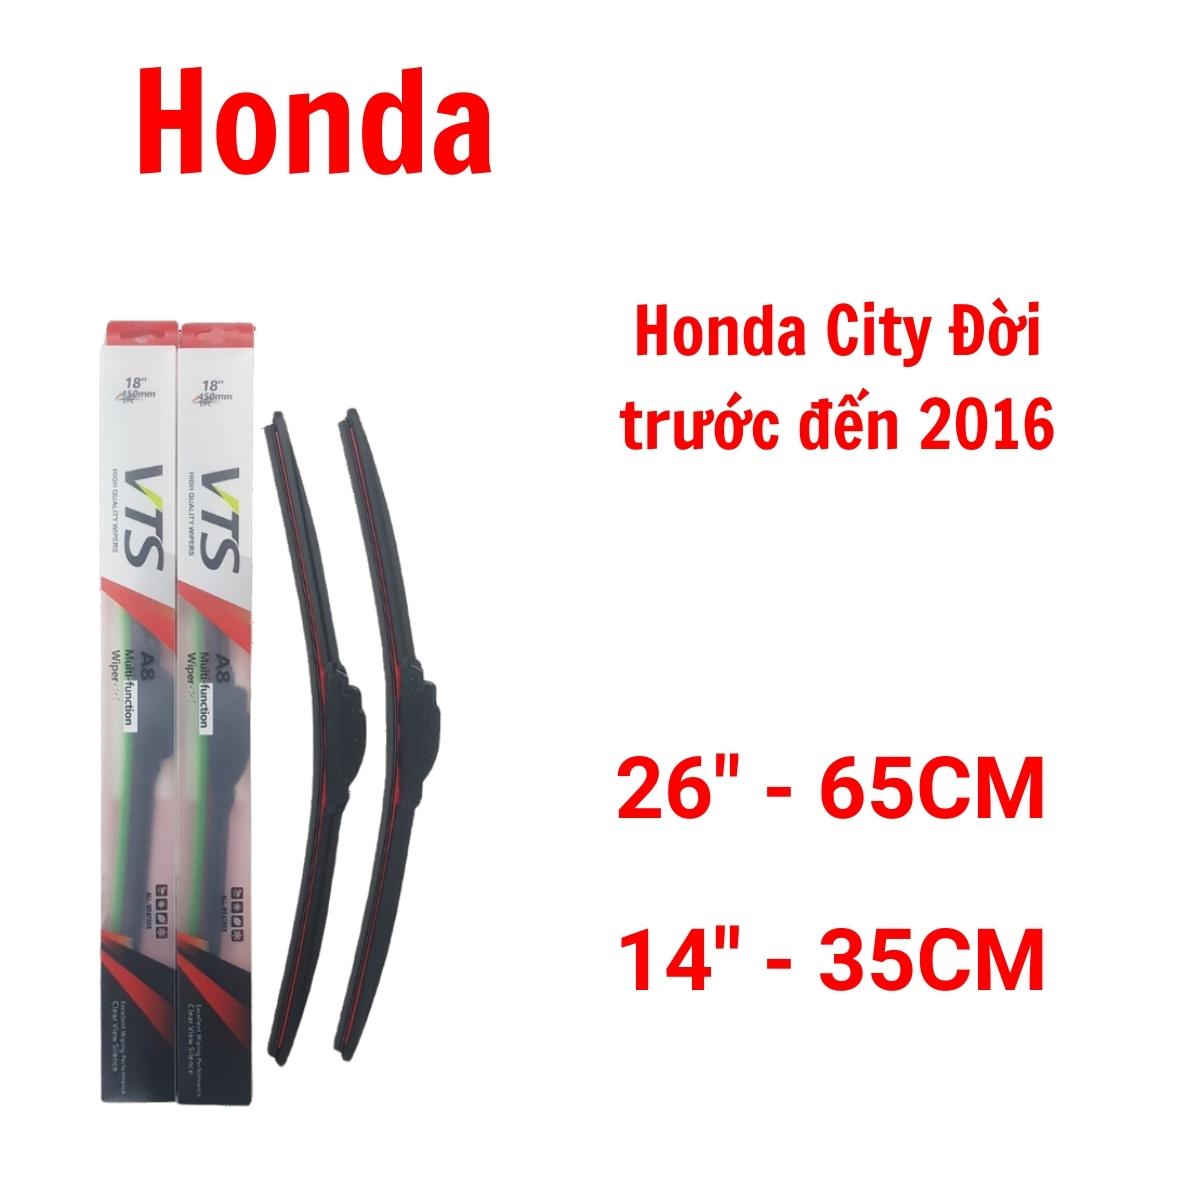 Cần gạt mưa thanh mềm A8 dành cho xe Honda:Accord, Civic, City, CR-V và các hãng xe khác của Honda - Hàng nhập khẩu